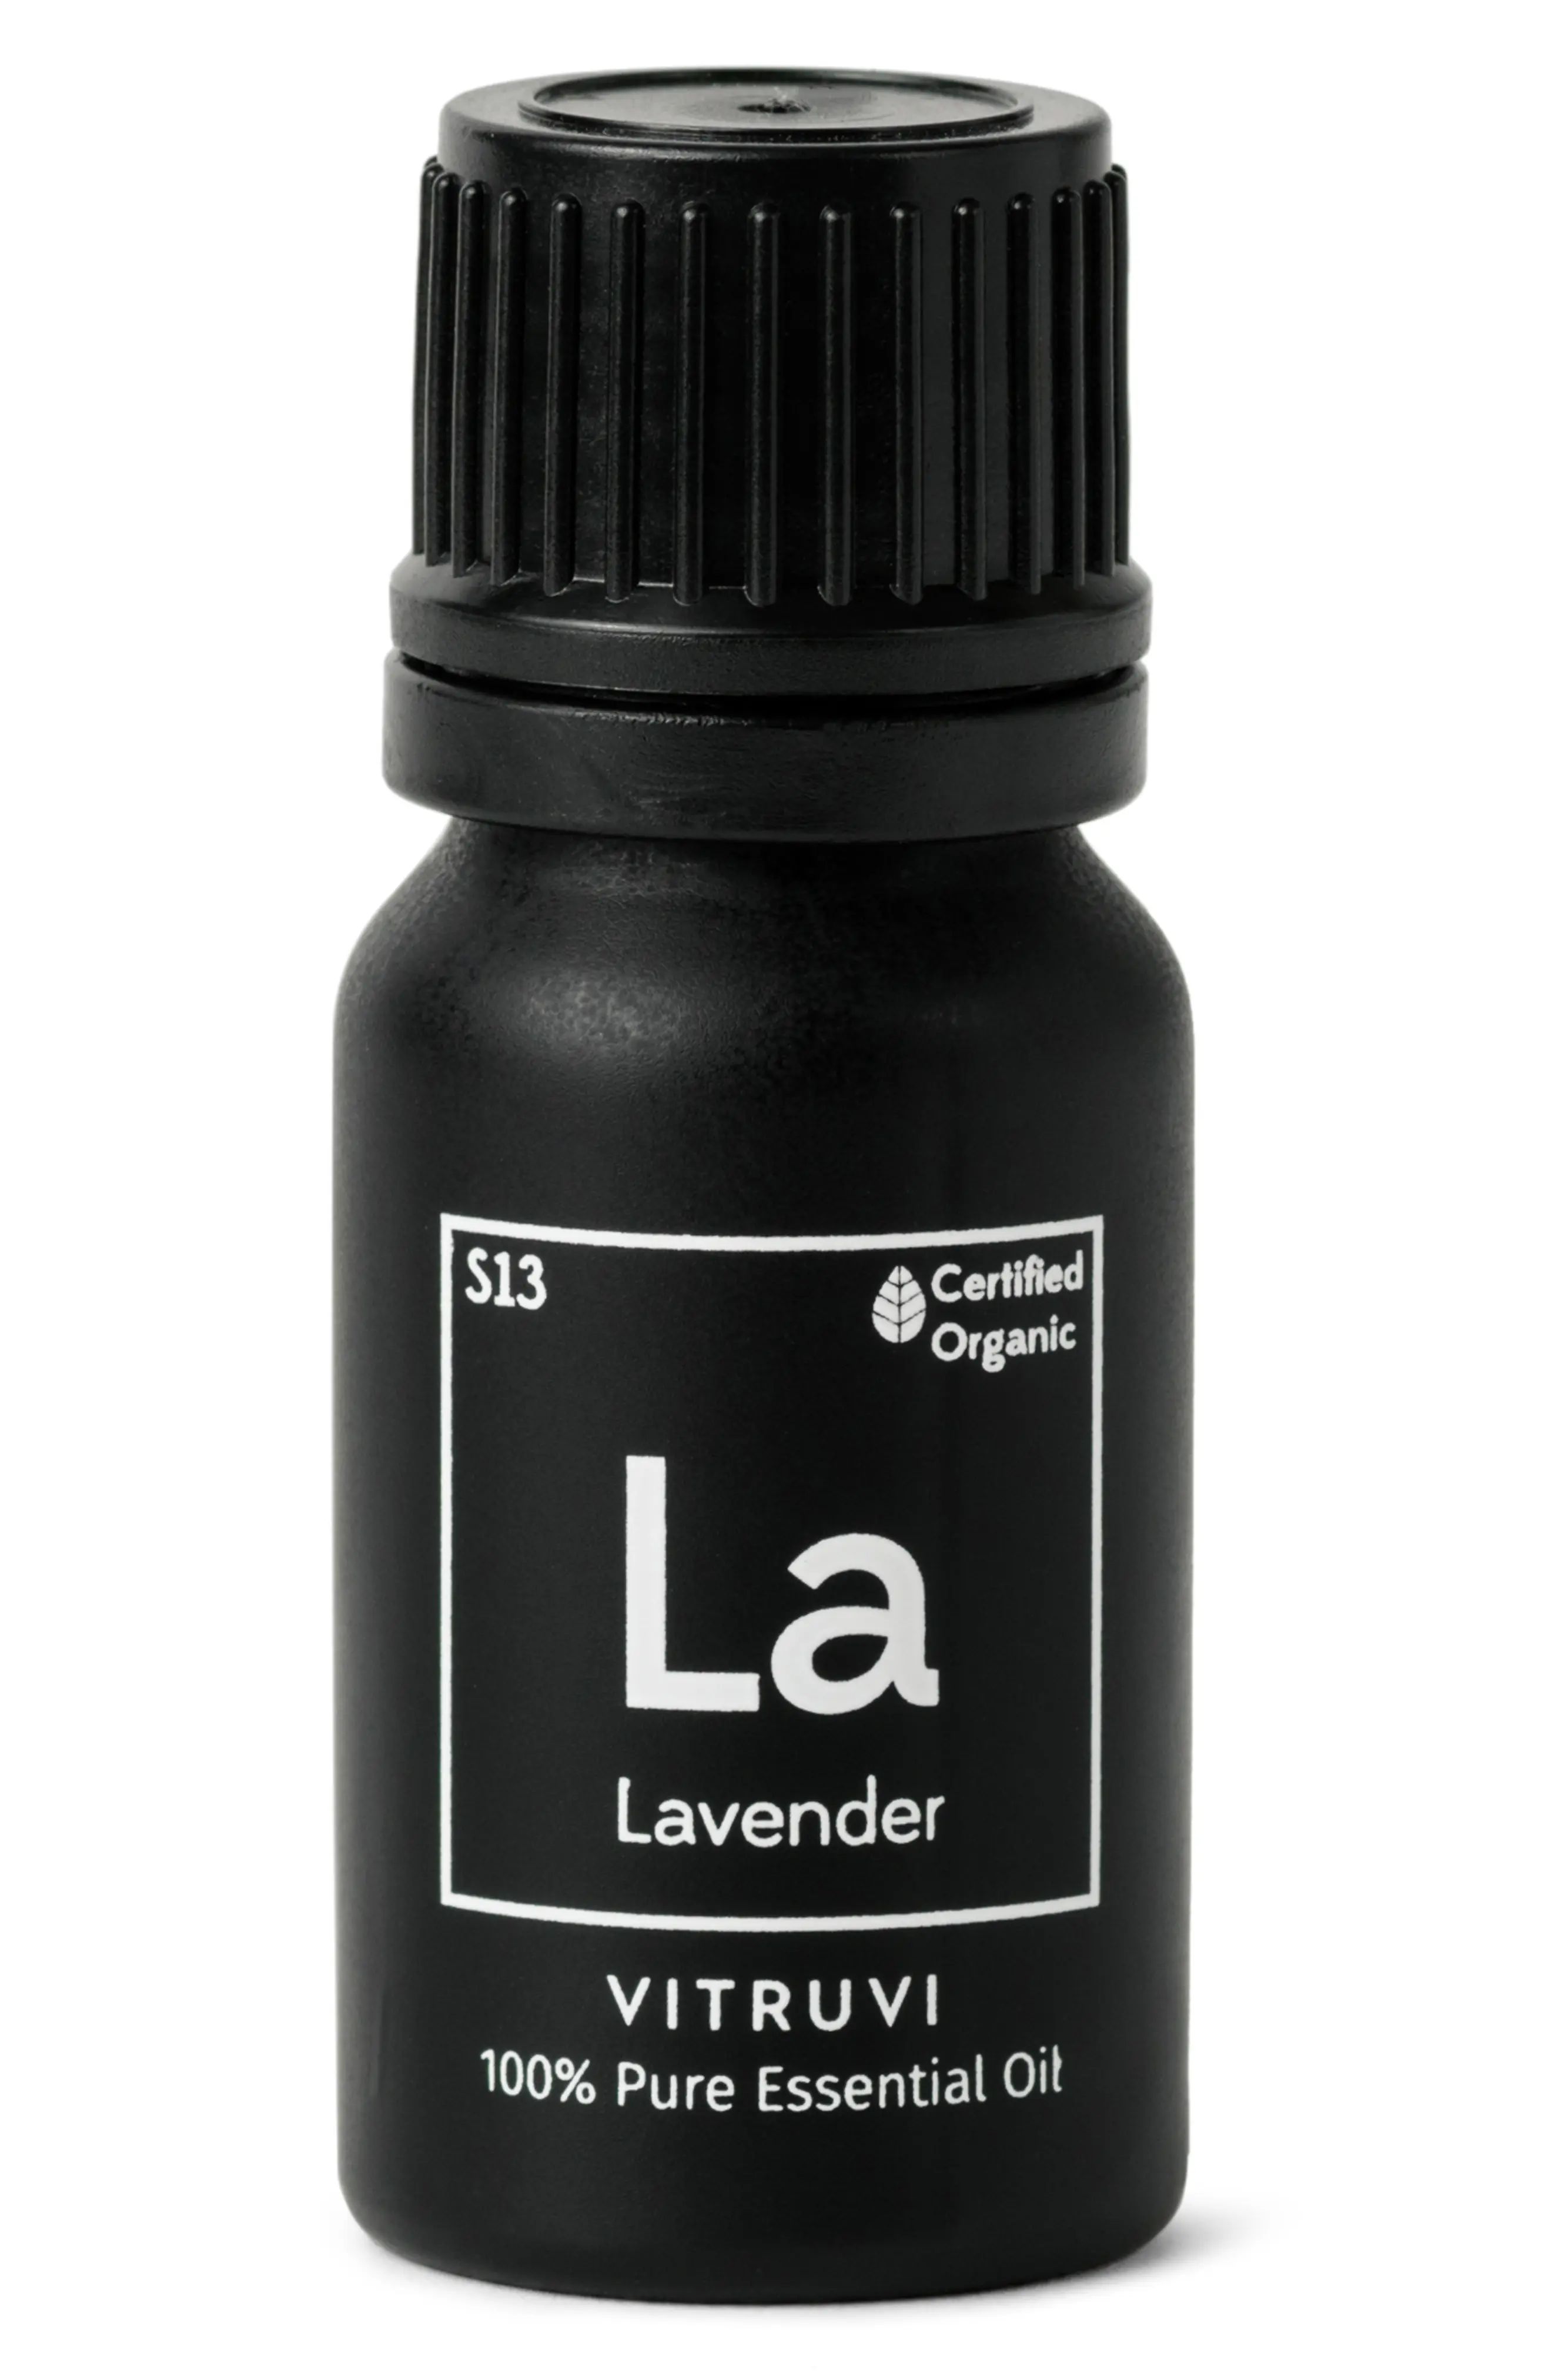 Vitruvi Lavender Essential Oil, Size One Size - None | Nordstrom